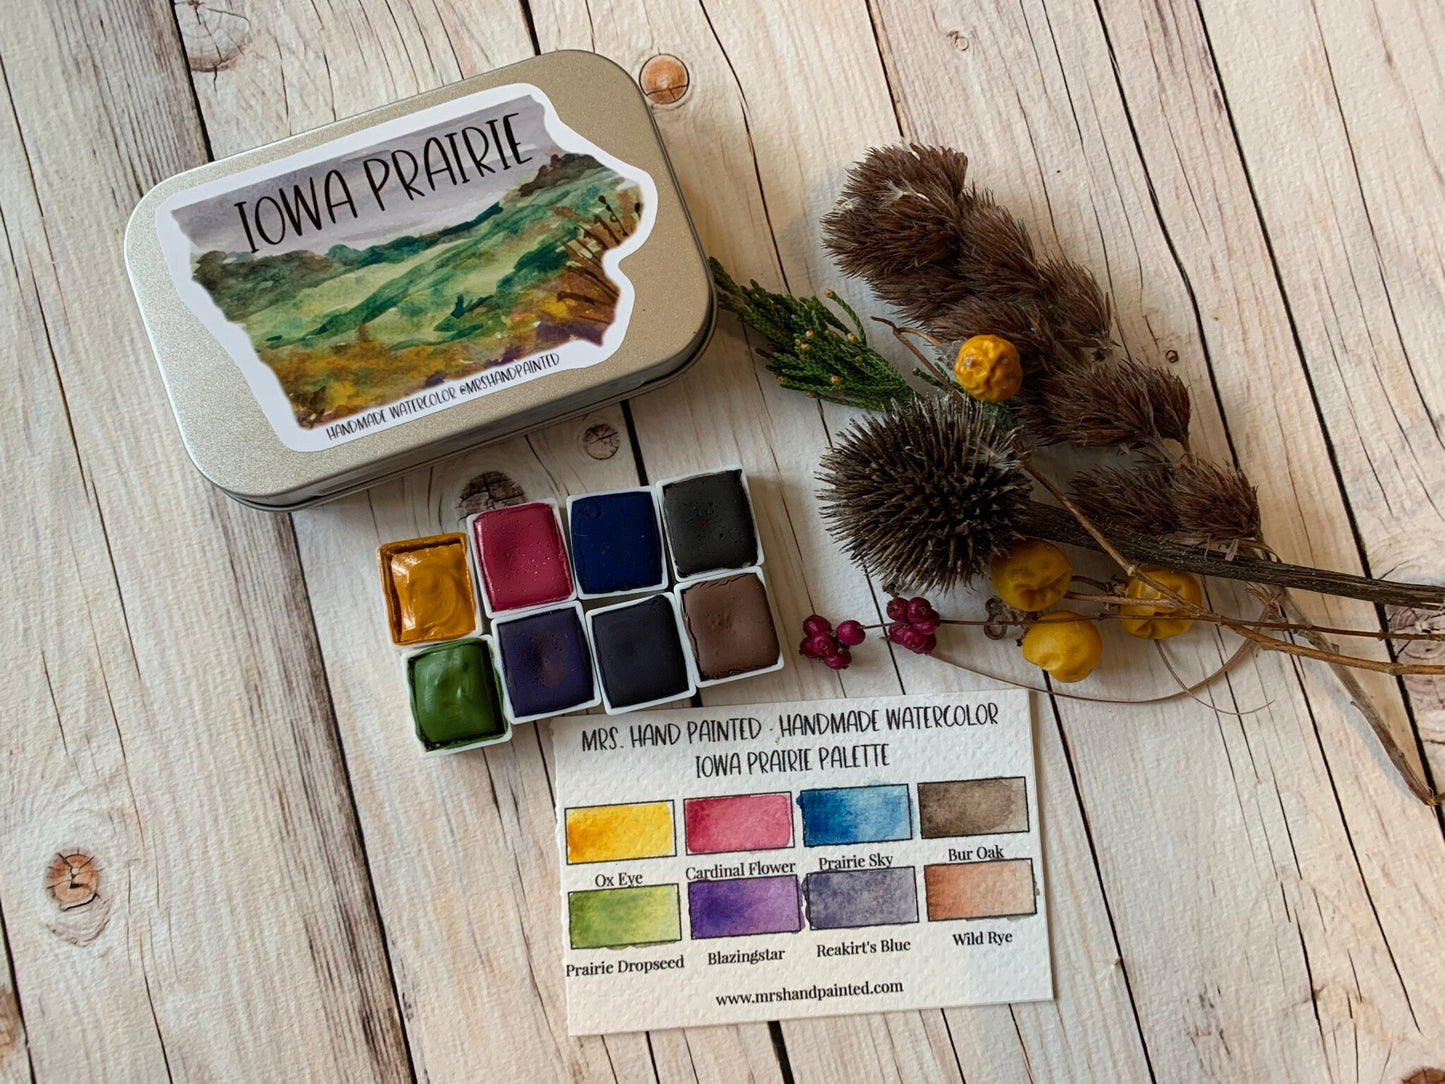 Handmade Watercolor Paints - IOWA PRAIRIE - Artisan Paint Palette, Set of 8 Half Pans Matte Watercolor